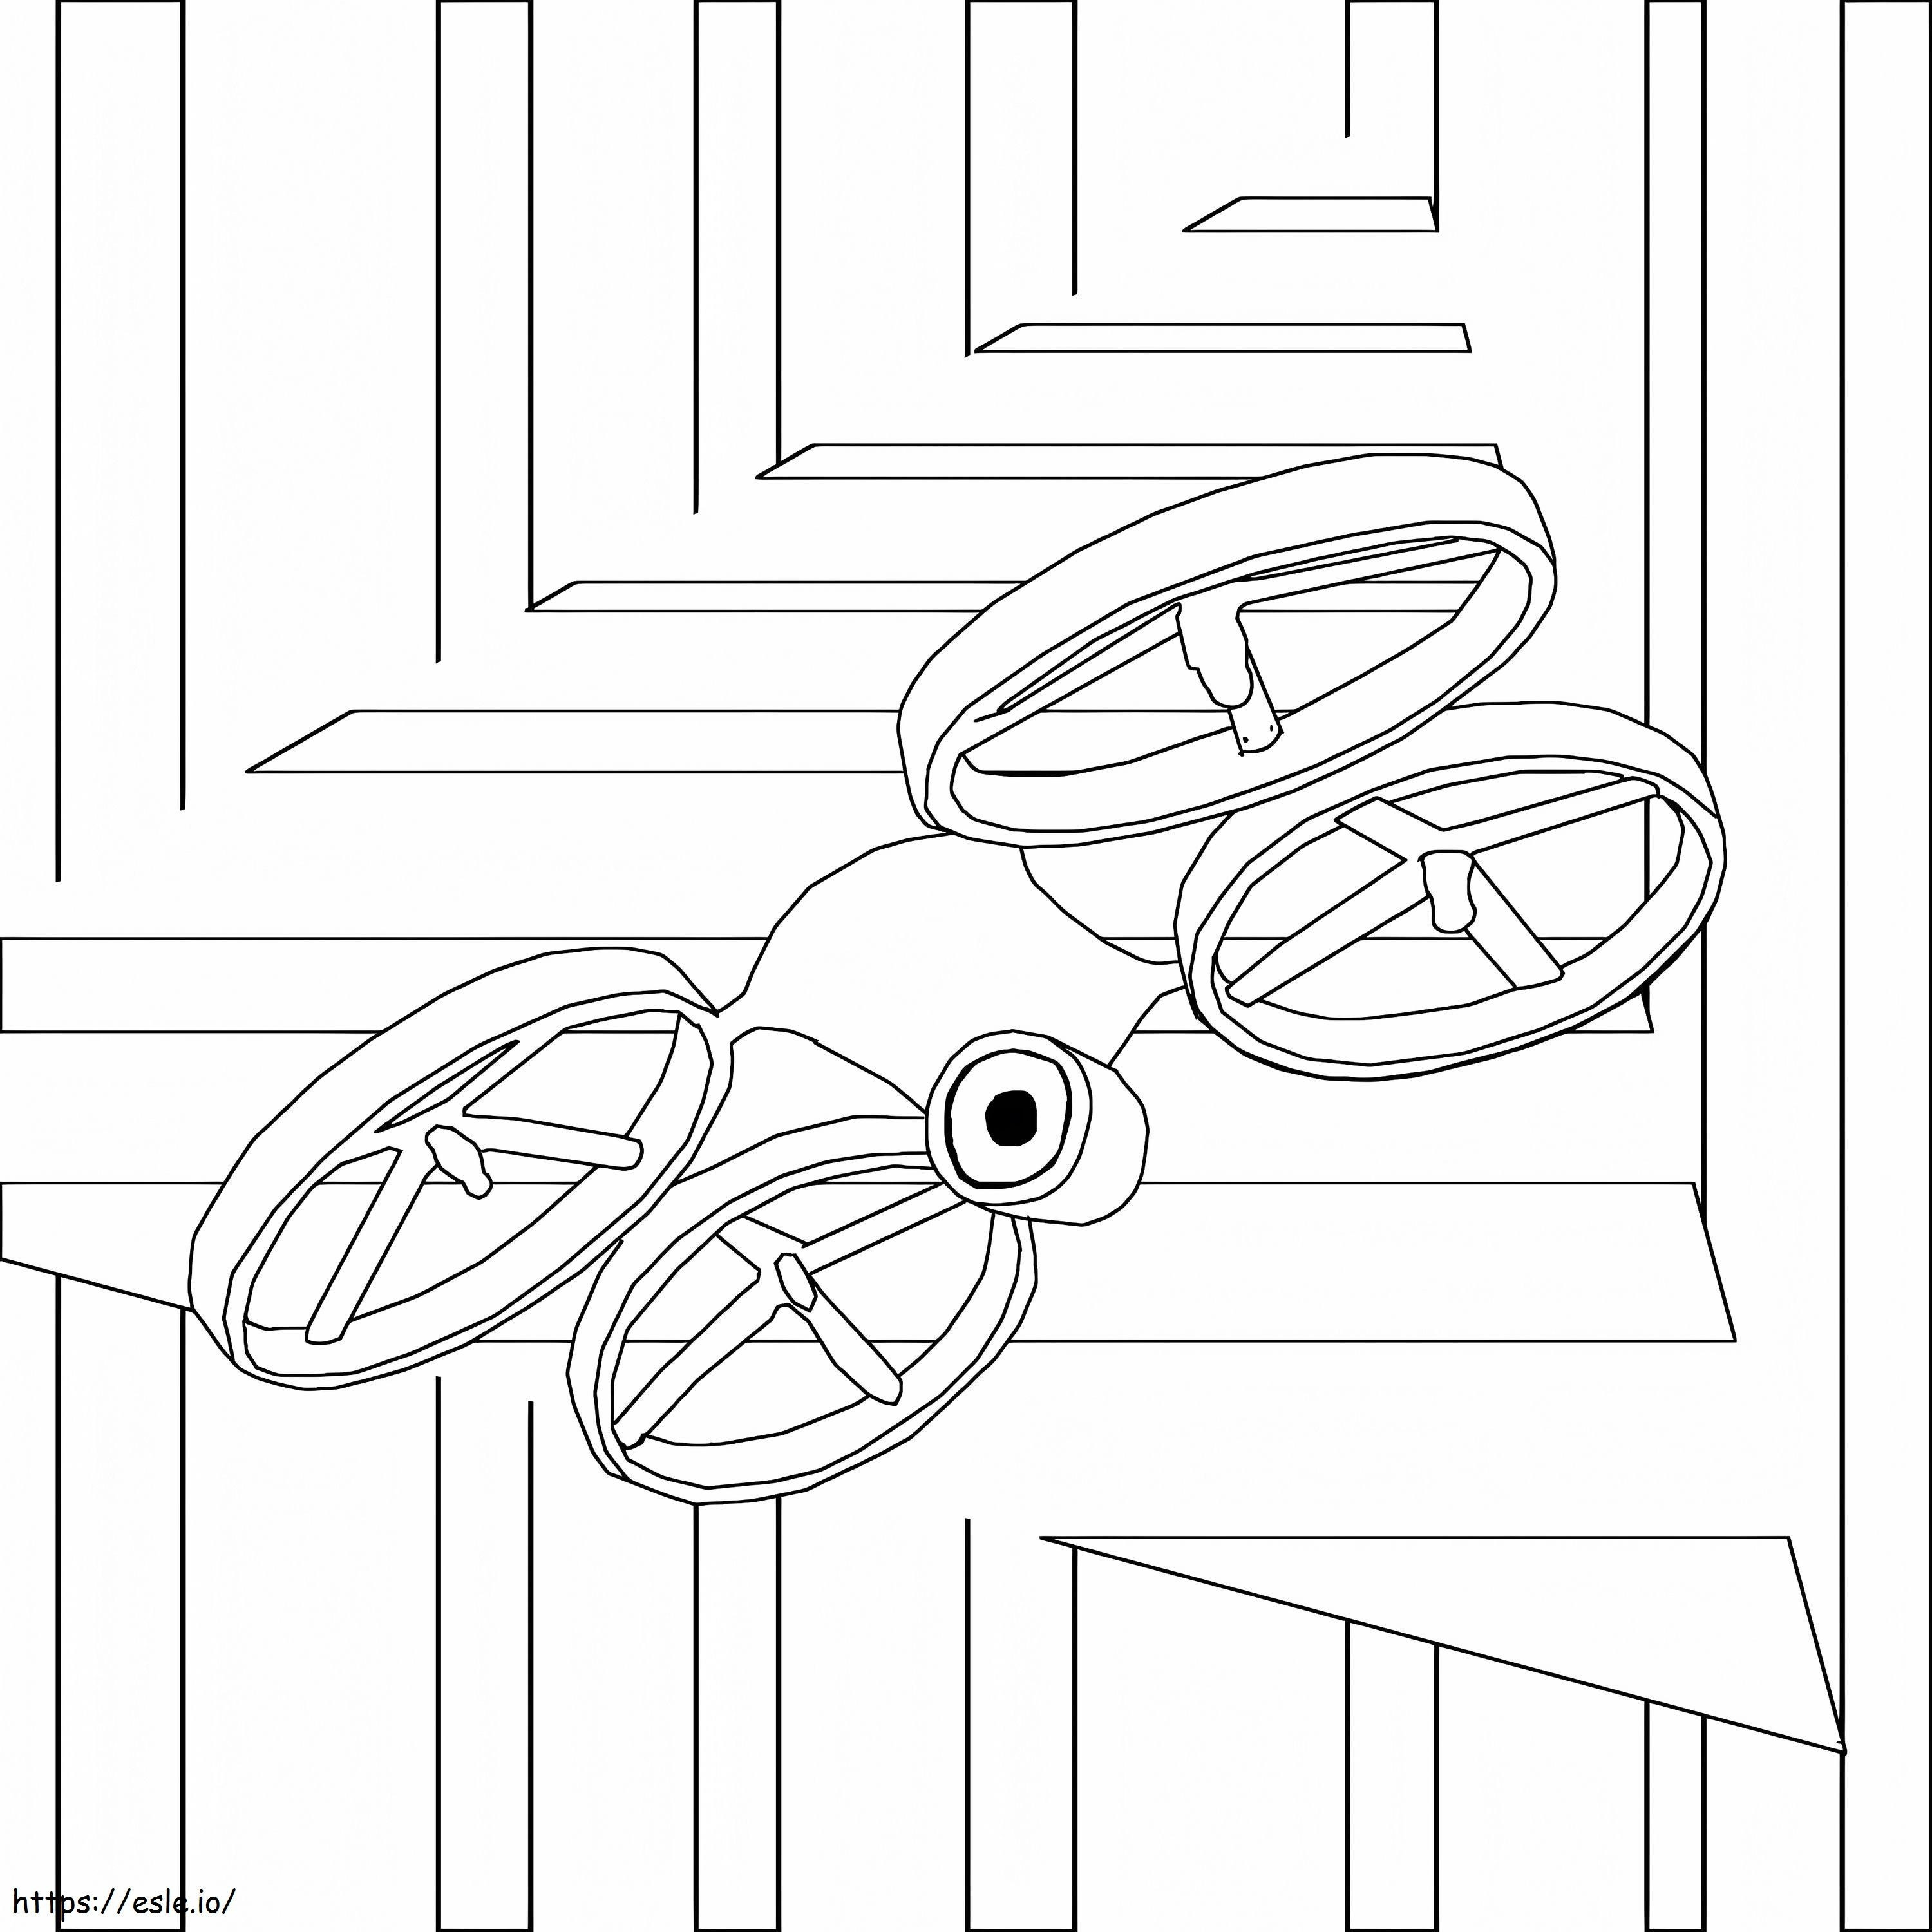 Coloriage Drone gratuit à imprimer dessin